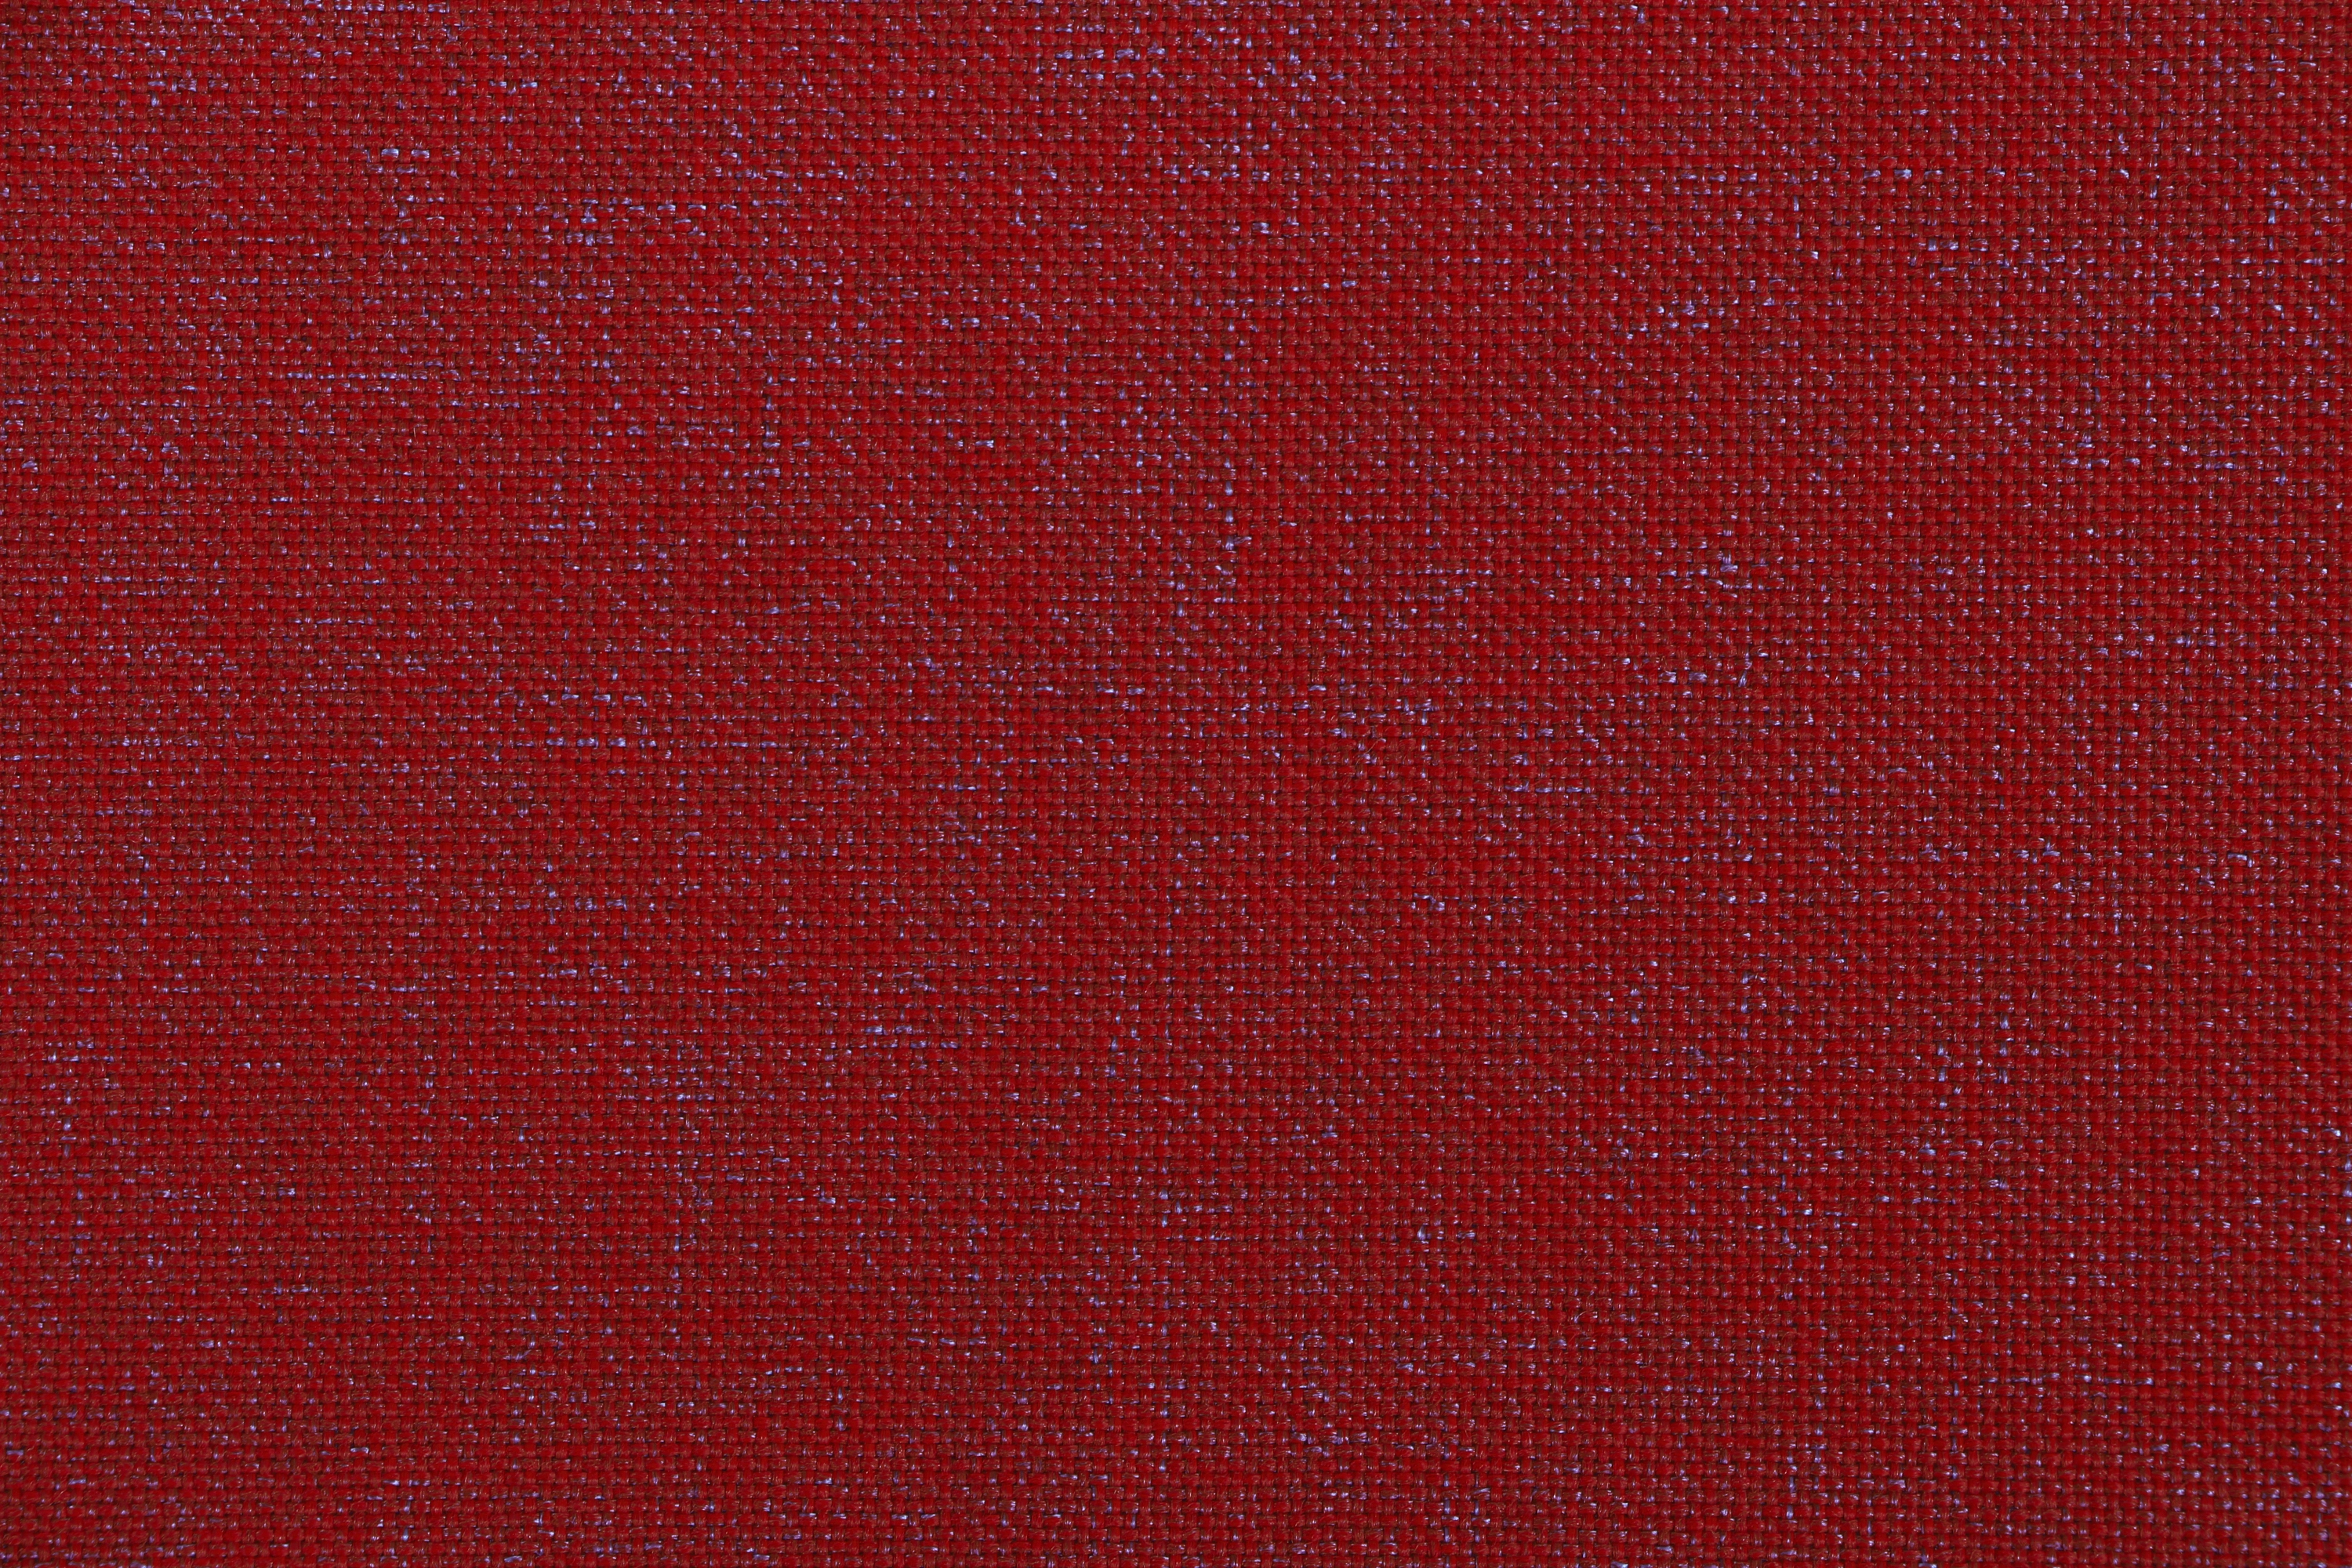 Siena Garden Sesselauflage Stella 96 cm x 46 cm x 3 cm Rot kaufen bei OBI